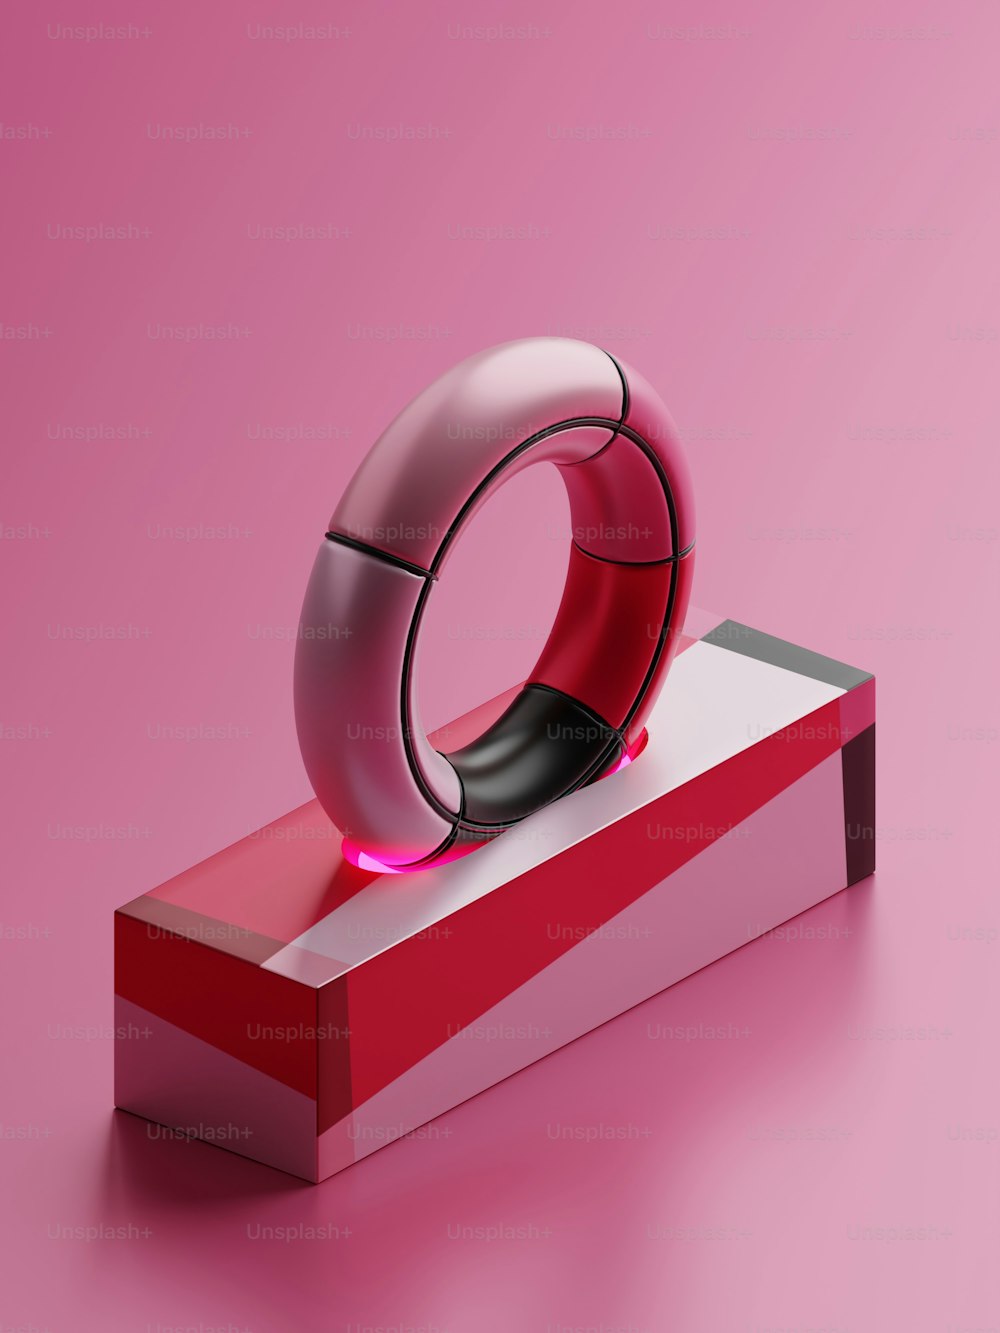 um objeto vermelho e branco em uma superfície rosa